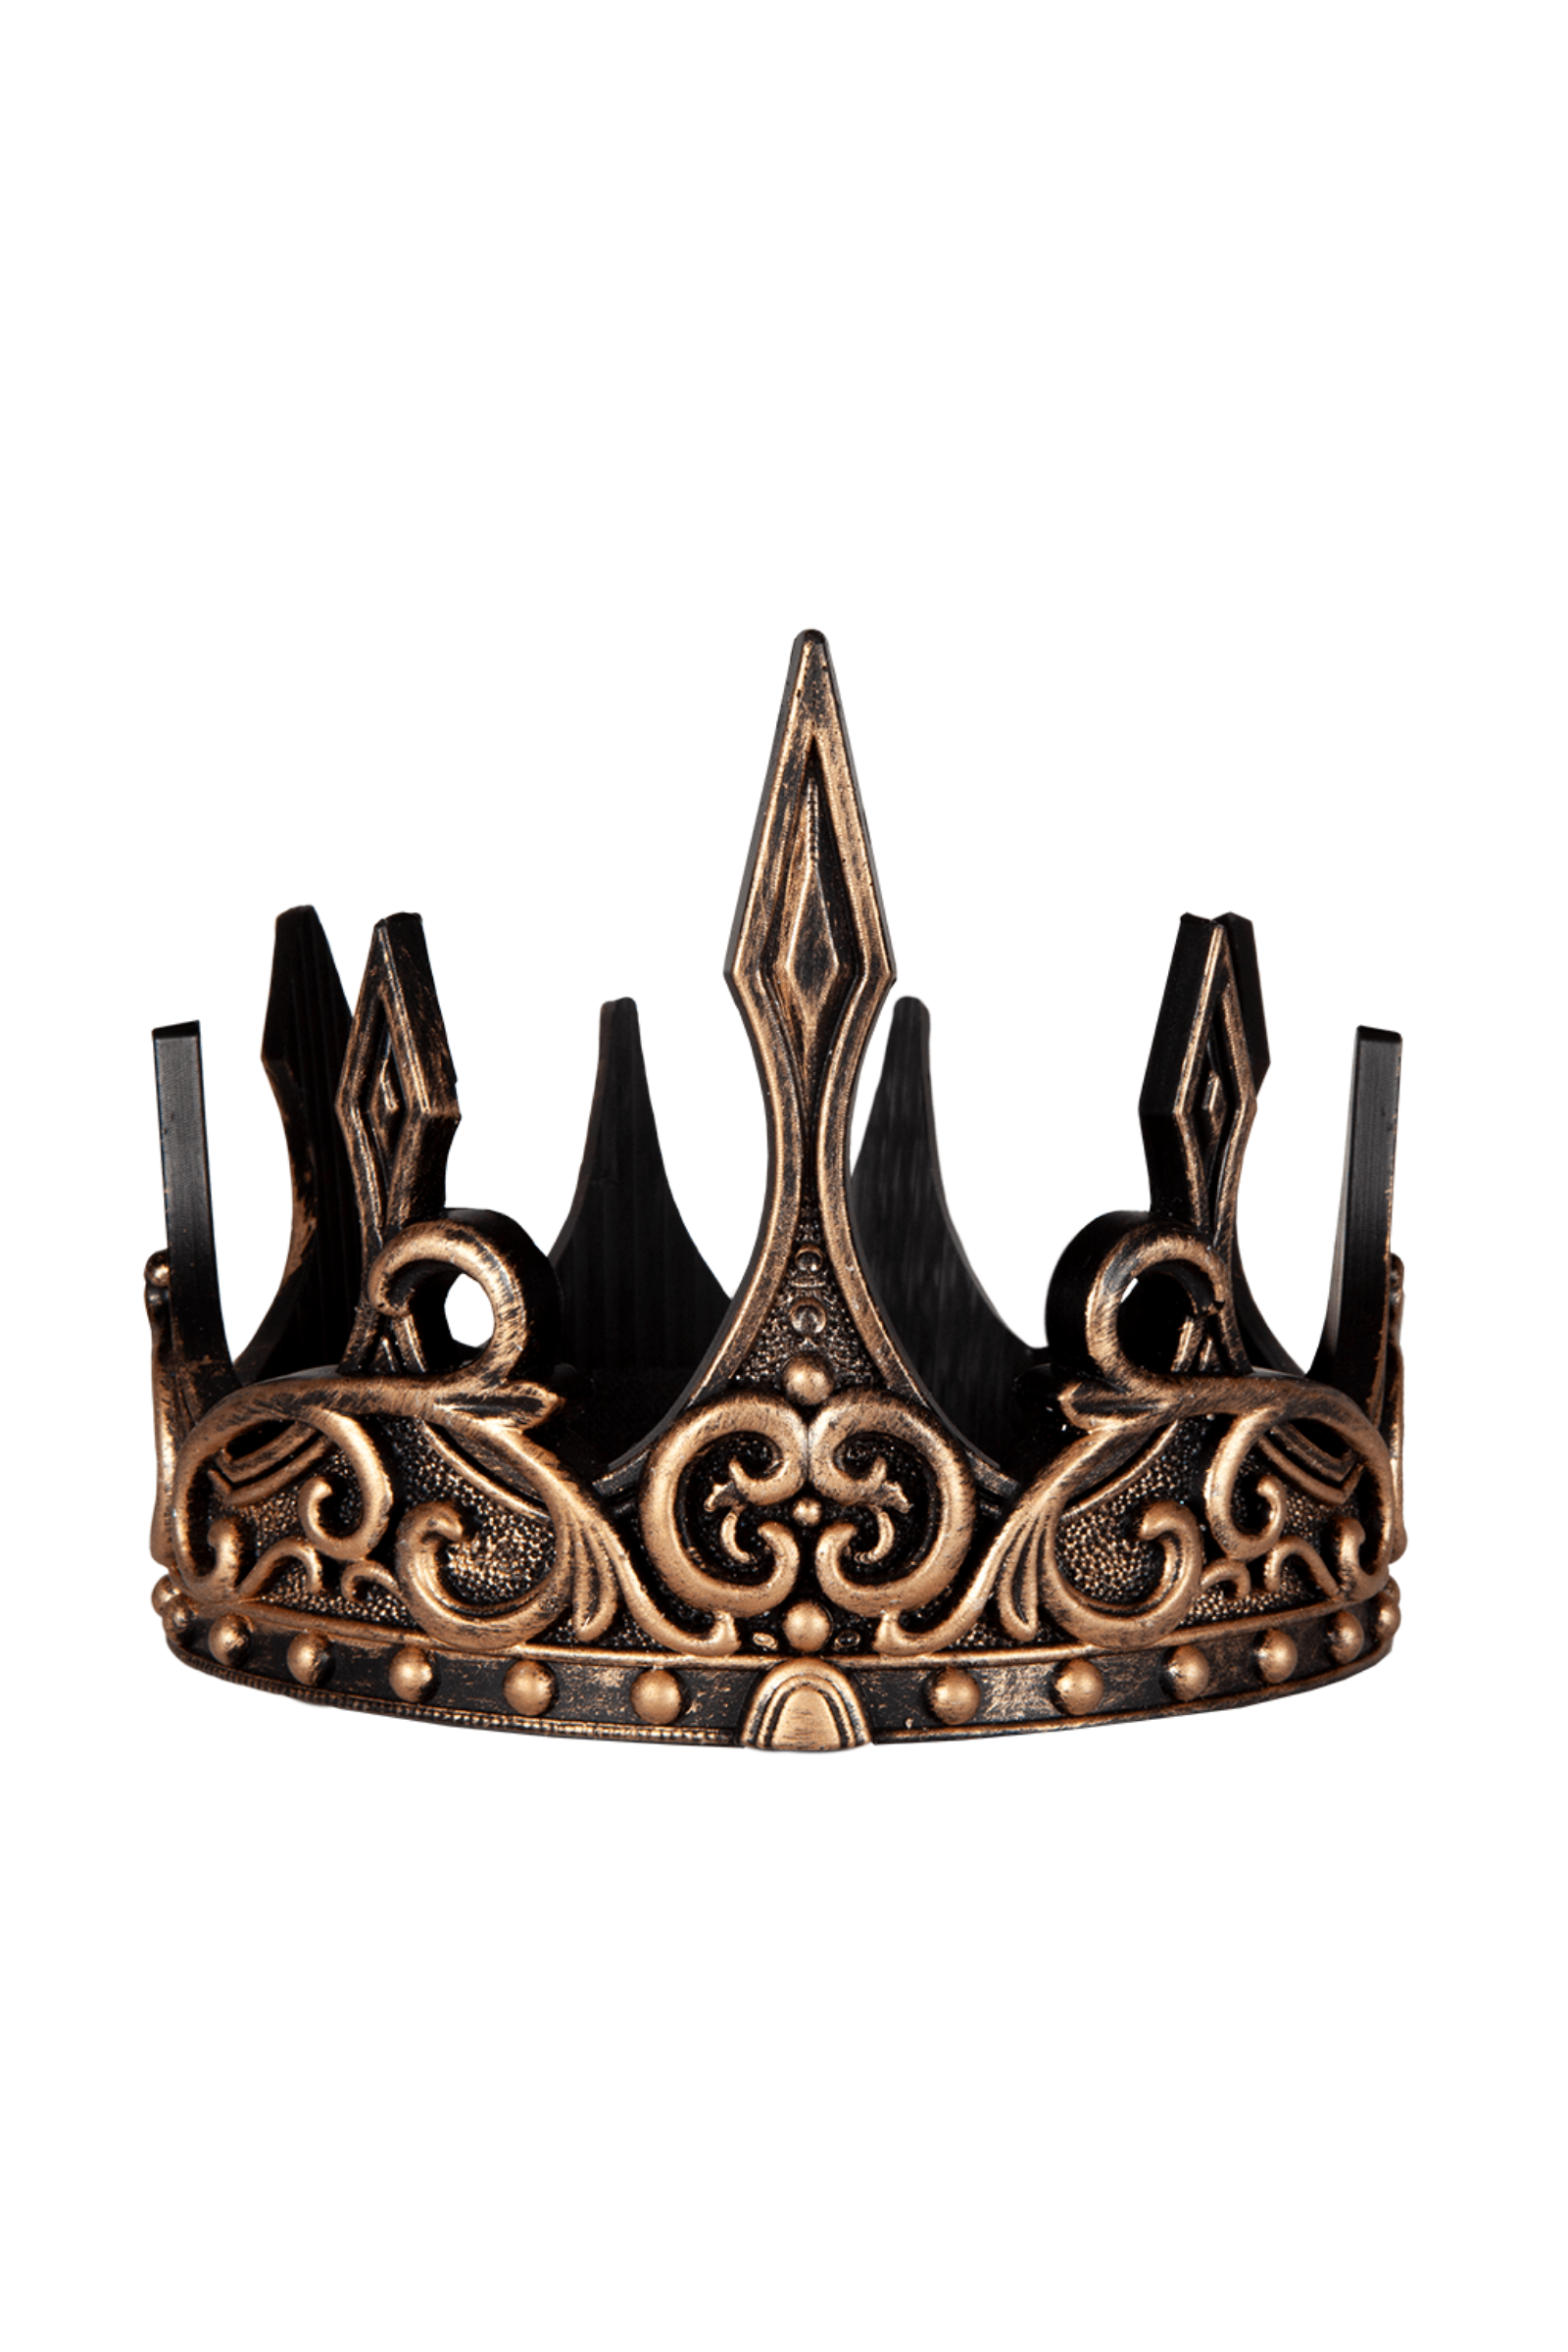 Medieval Crown, Gold/Black